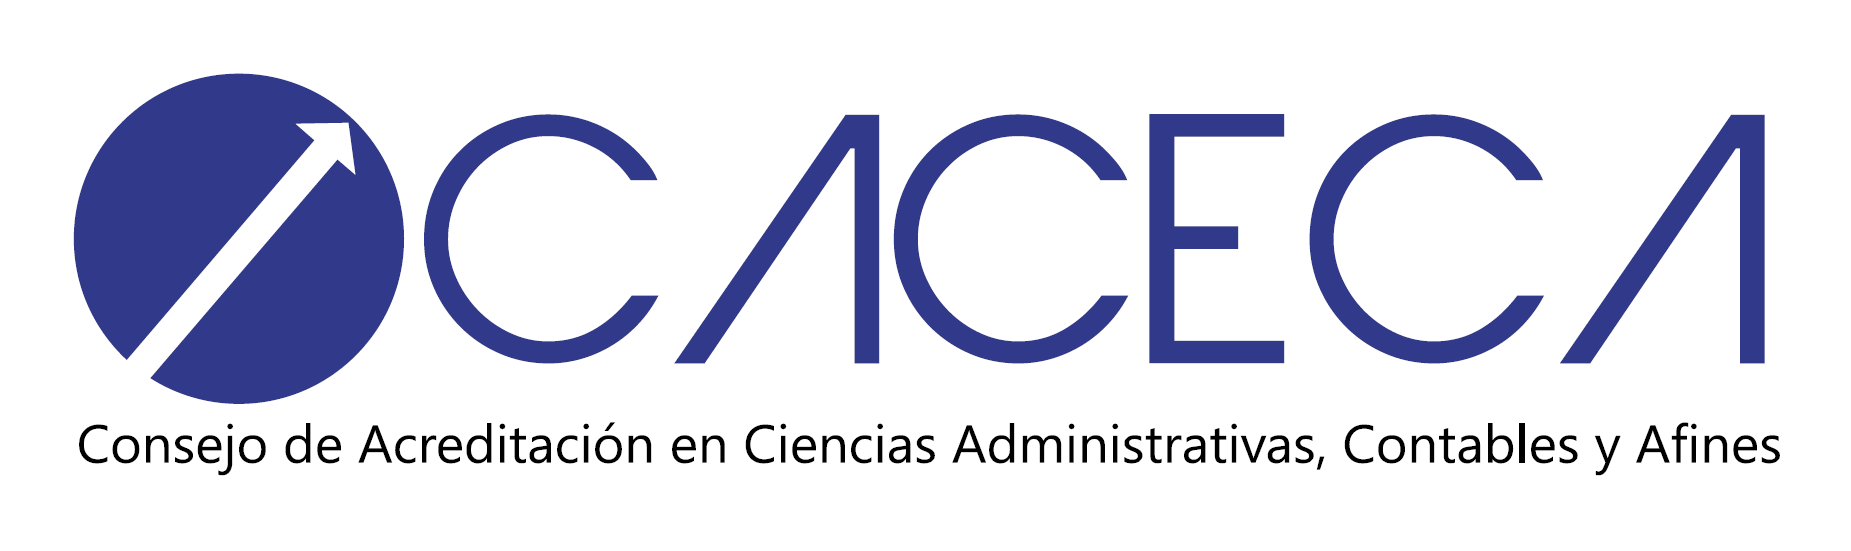 CACECA - Consejo de Acreditación en Ciencias Administrativas